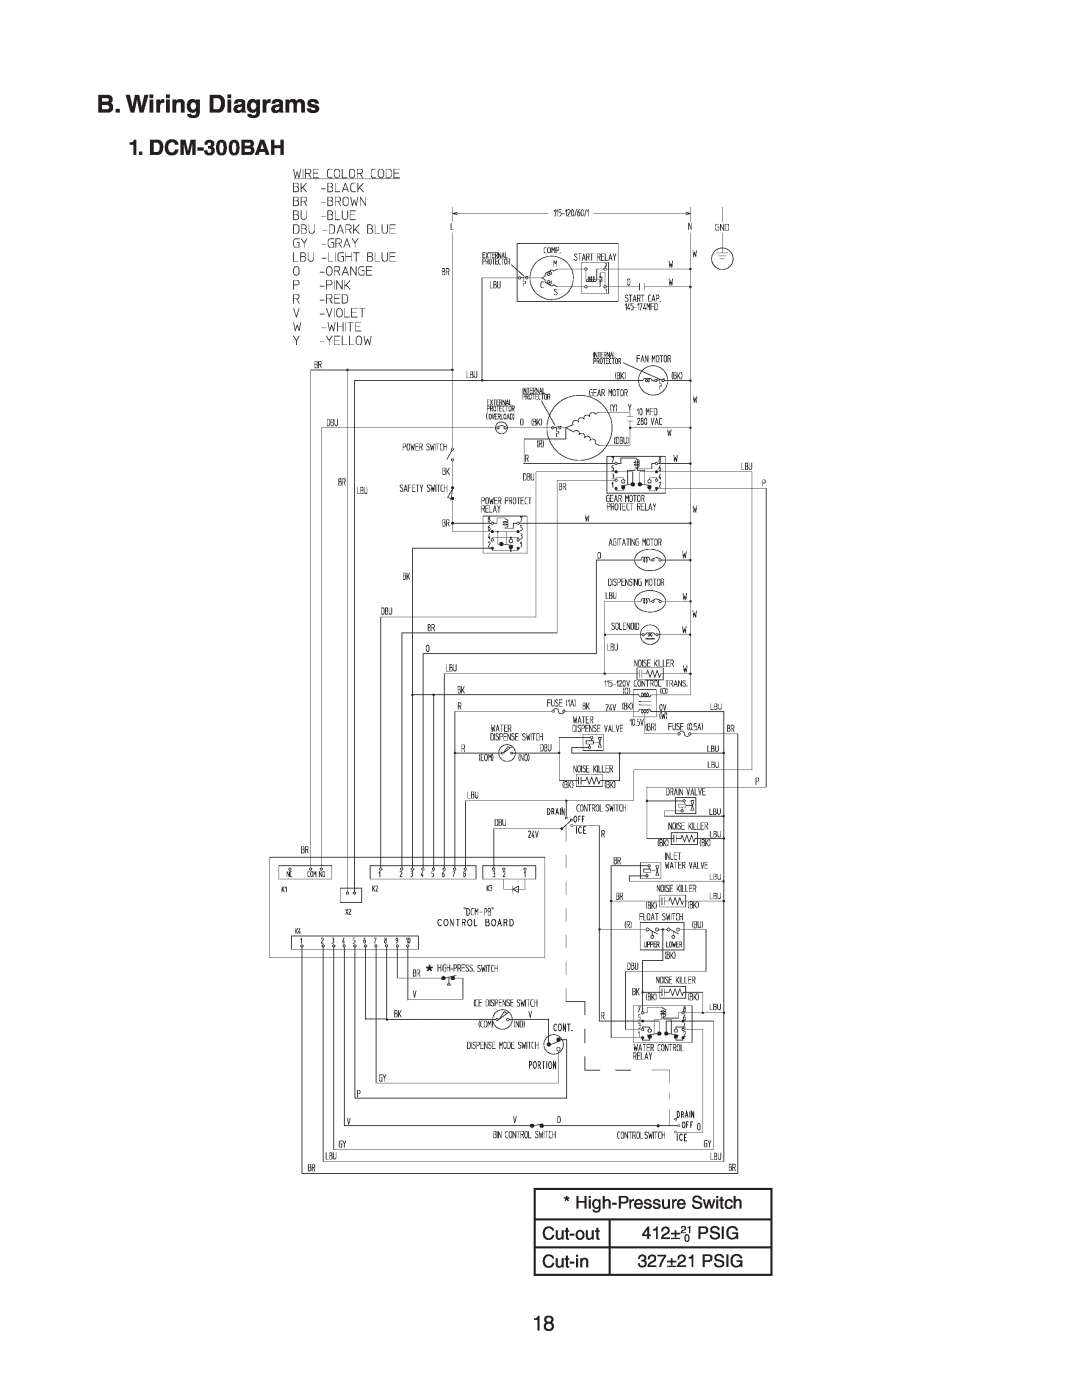 Hoshizaki DCM 300BAH(-OS) service manual B. Wiring Diagrams, DCM-300BAH 